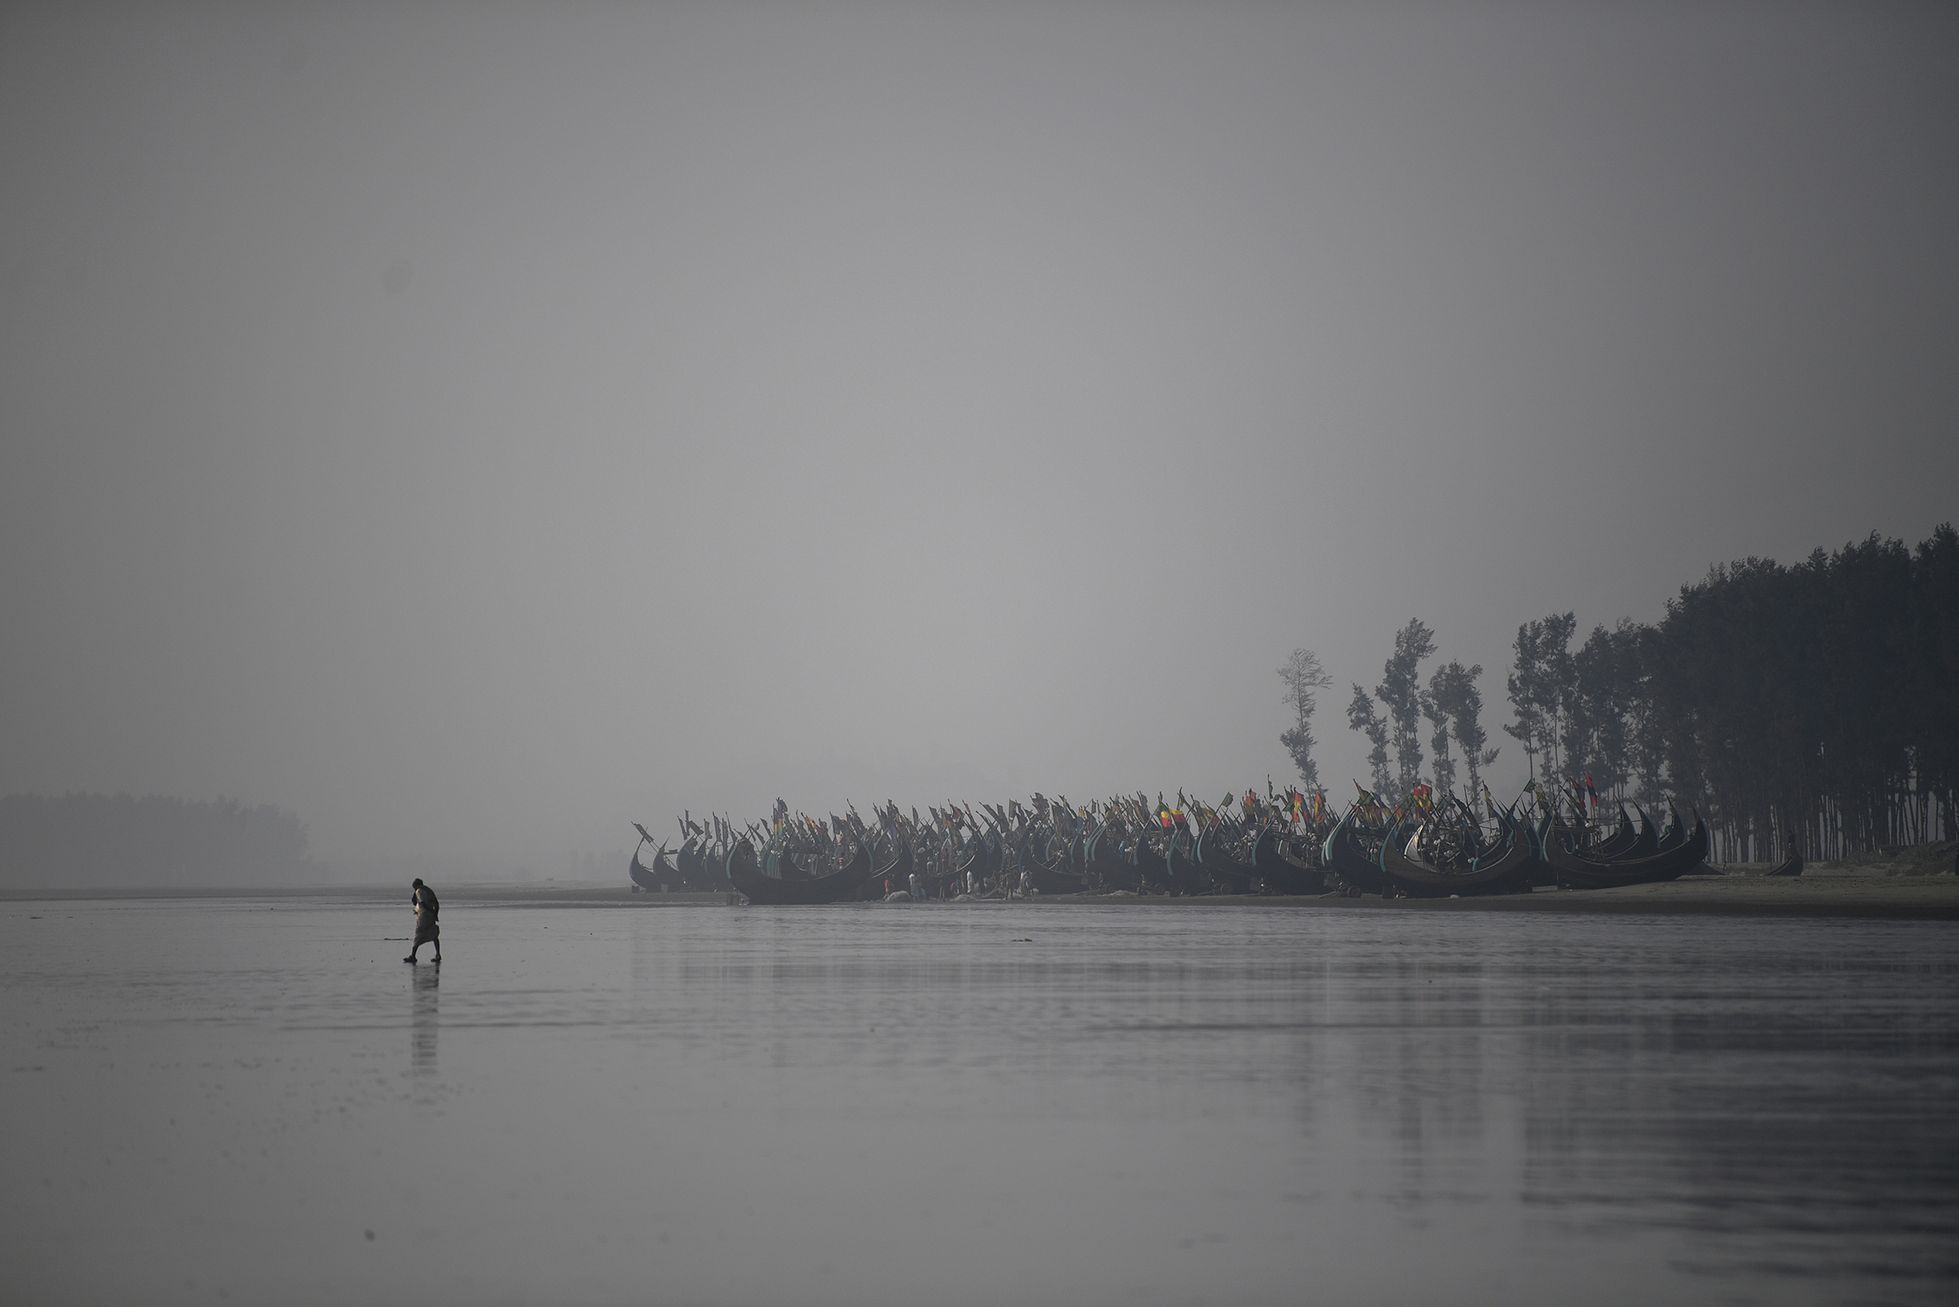 Fotogalerie / Rohingové v Bangladéši / Reuters / 2